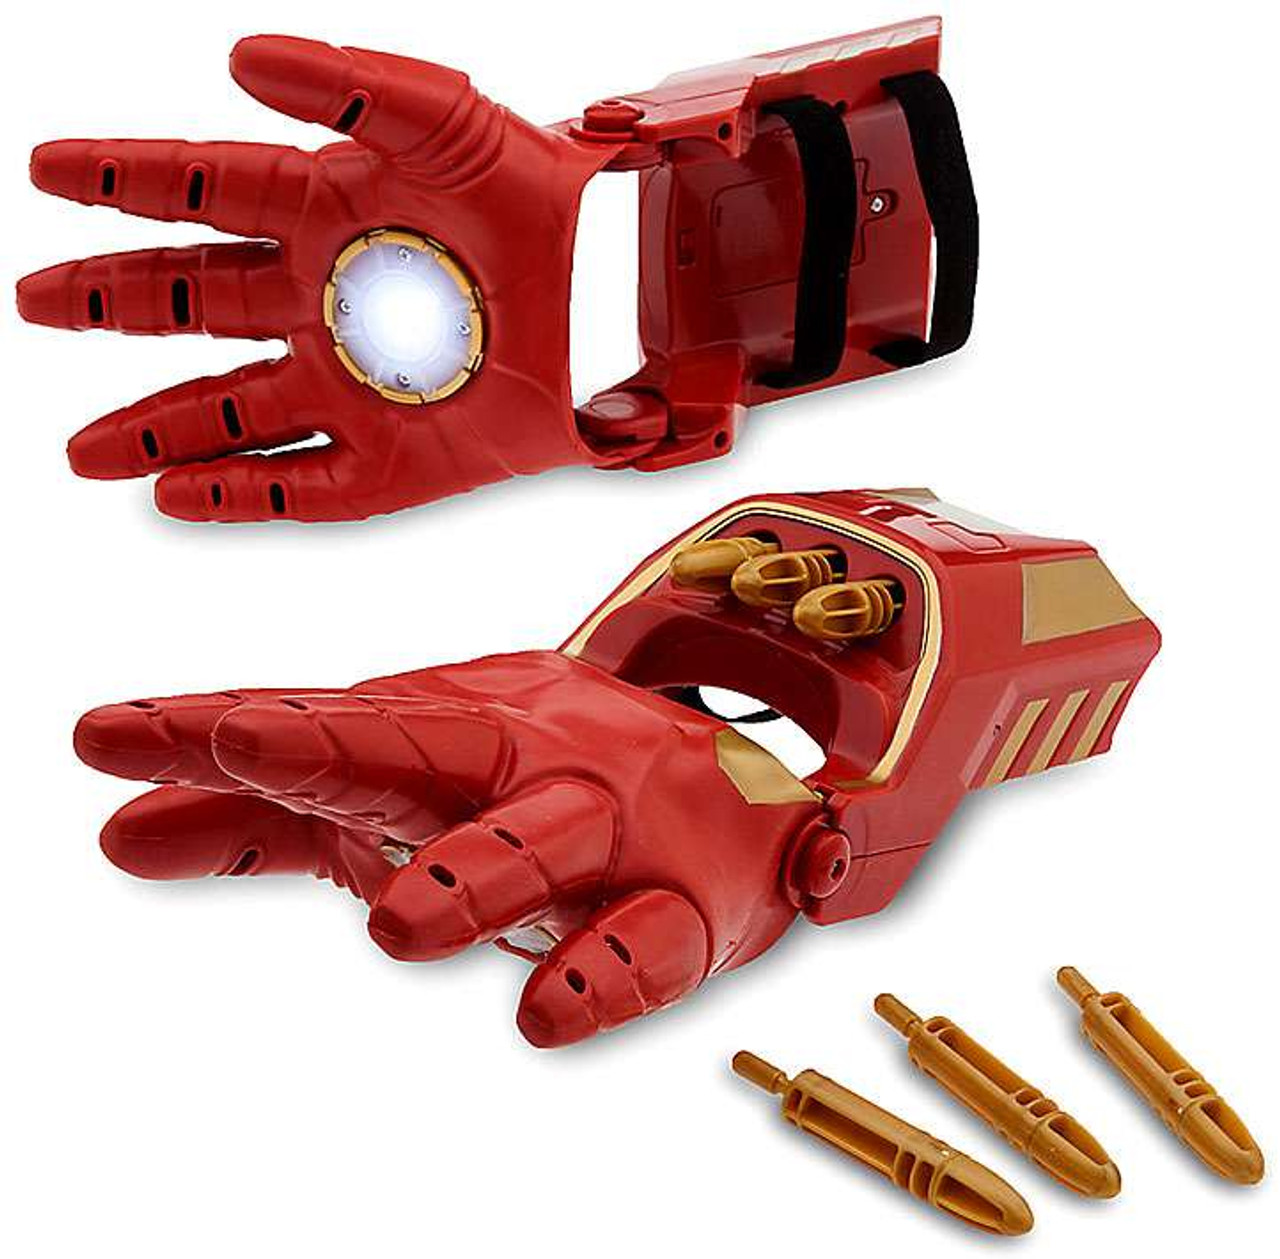 iron man gloves